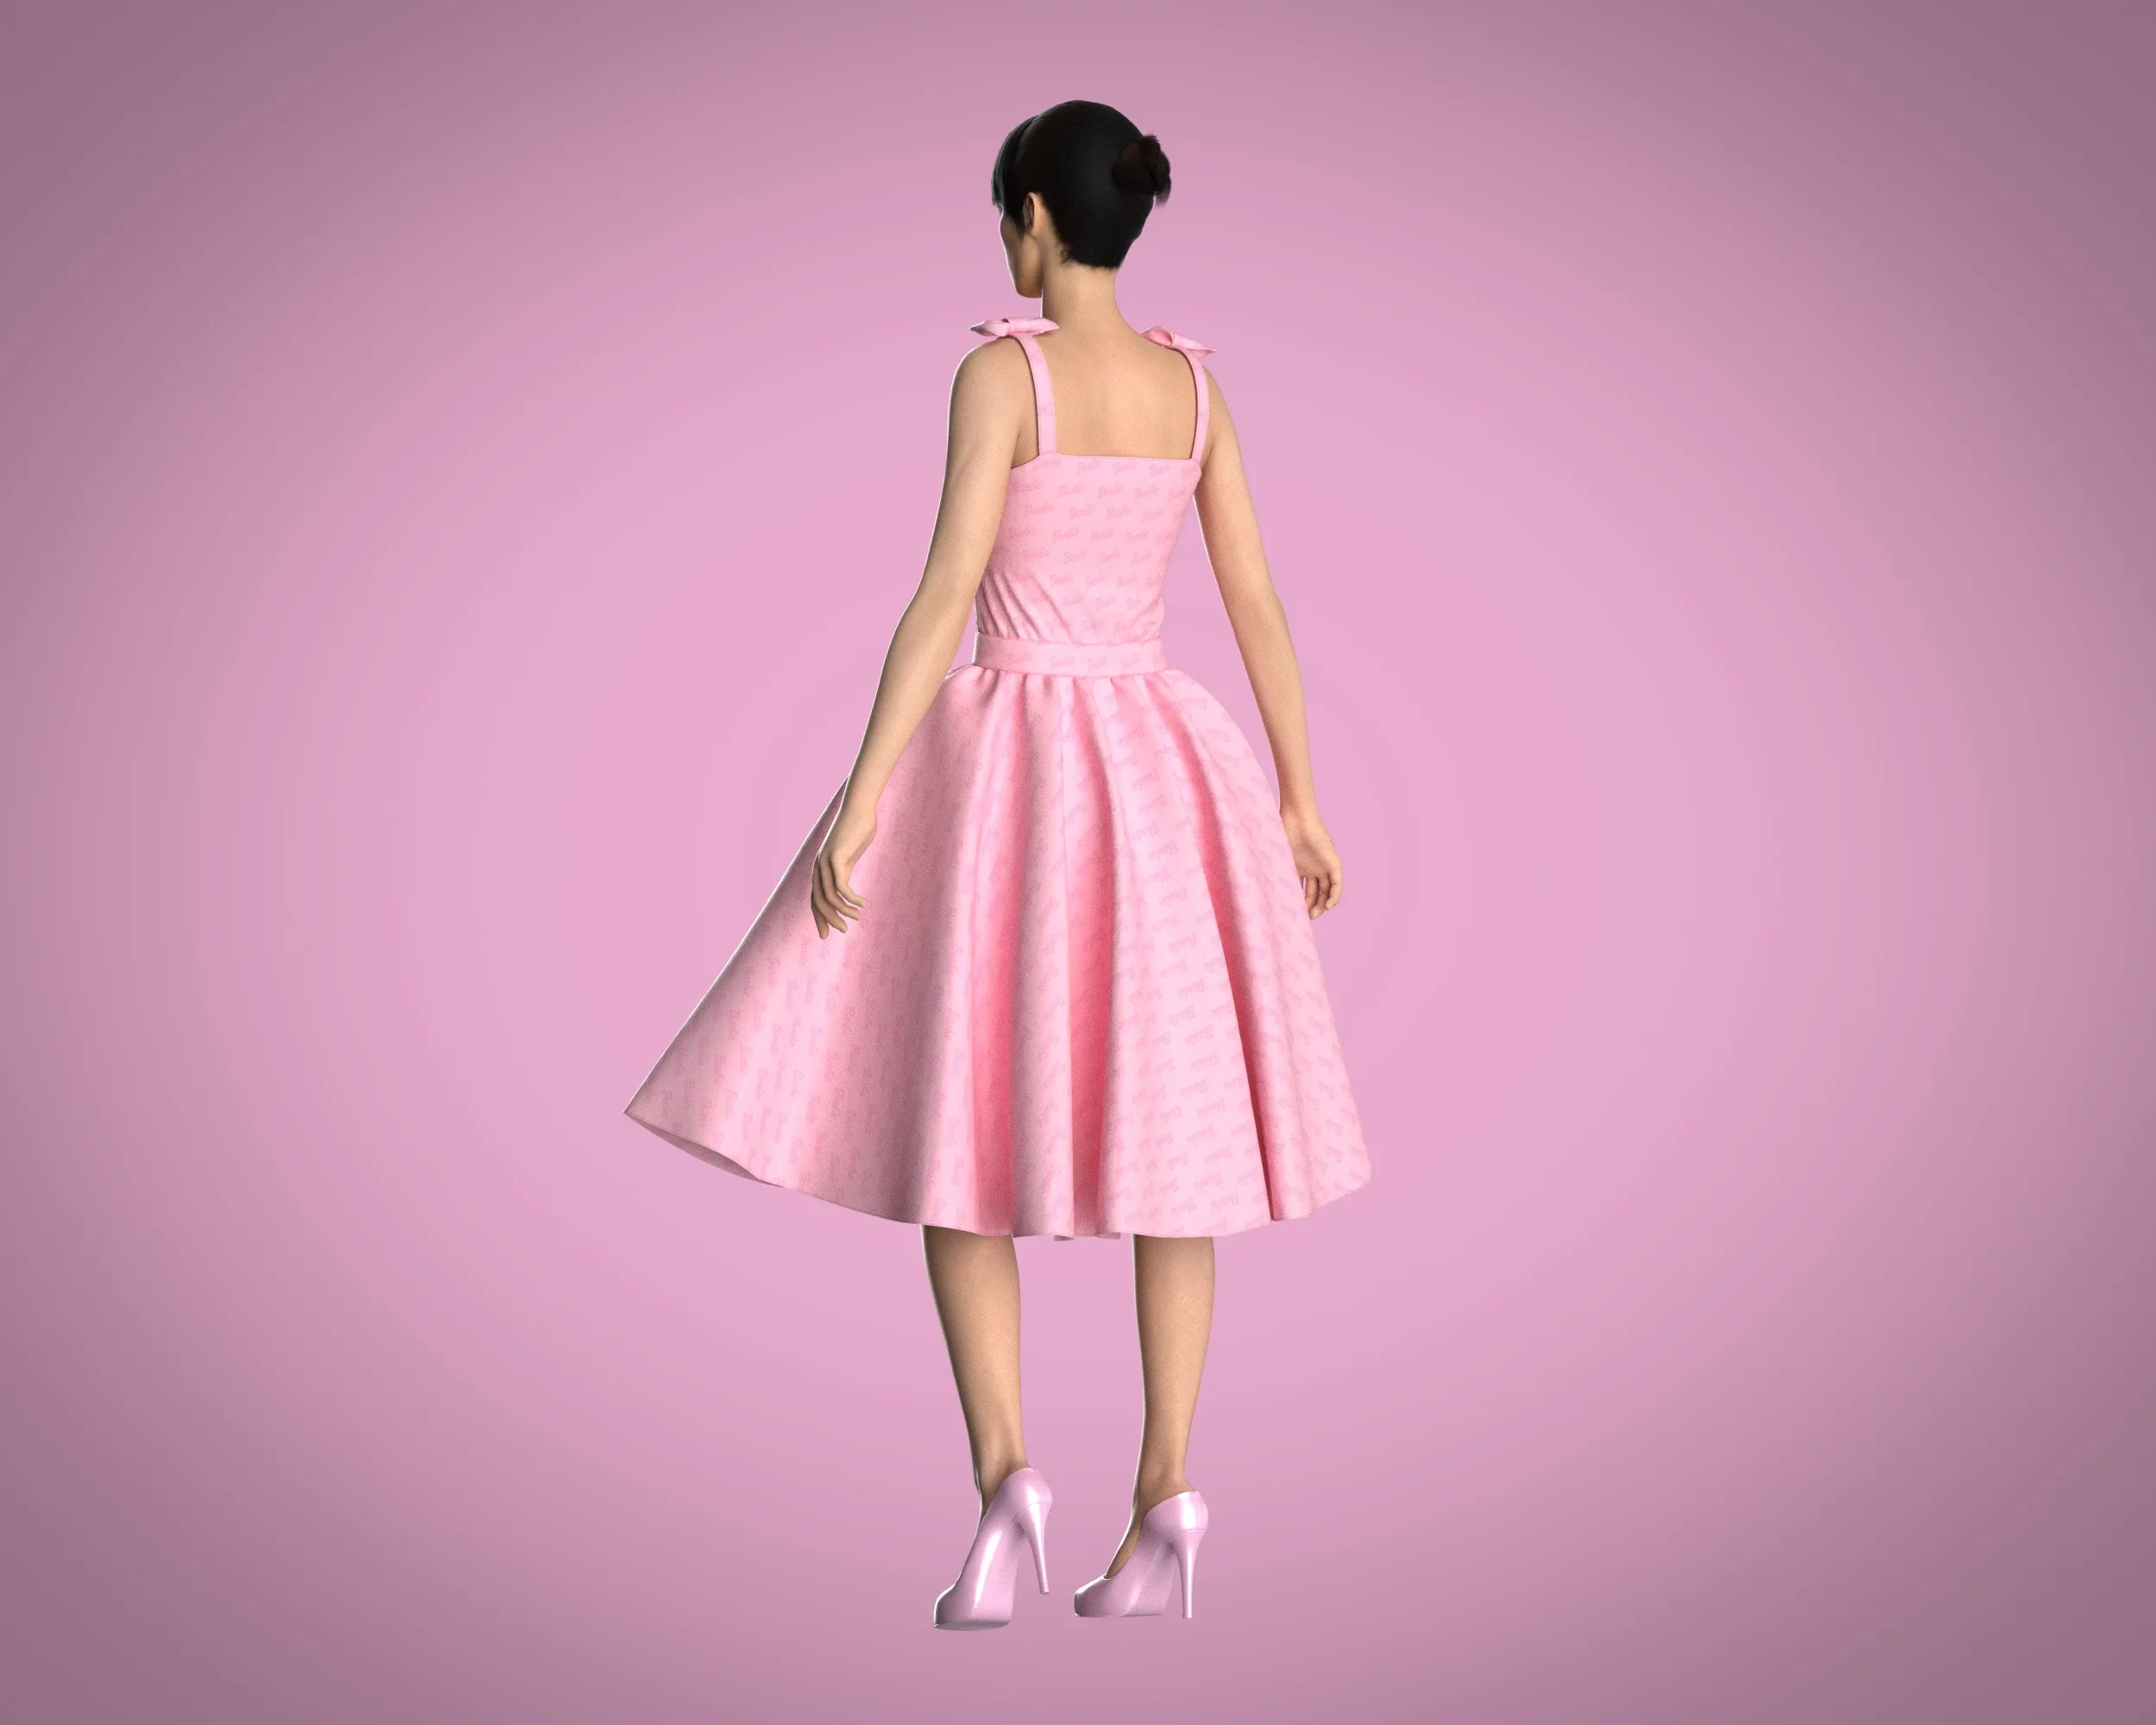 Barbie Dress - Barbie Logo | Marvelous / Clo3d / obj / fbx